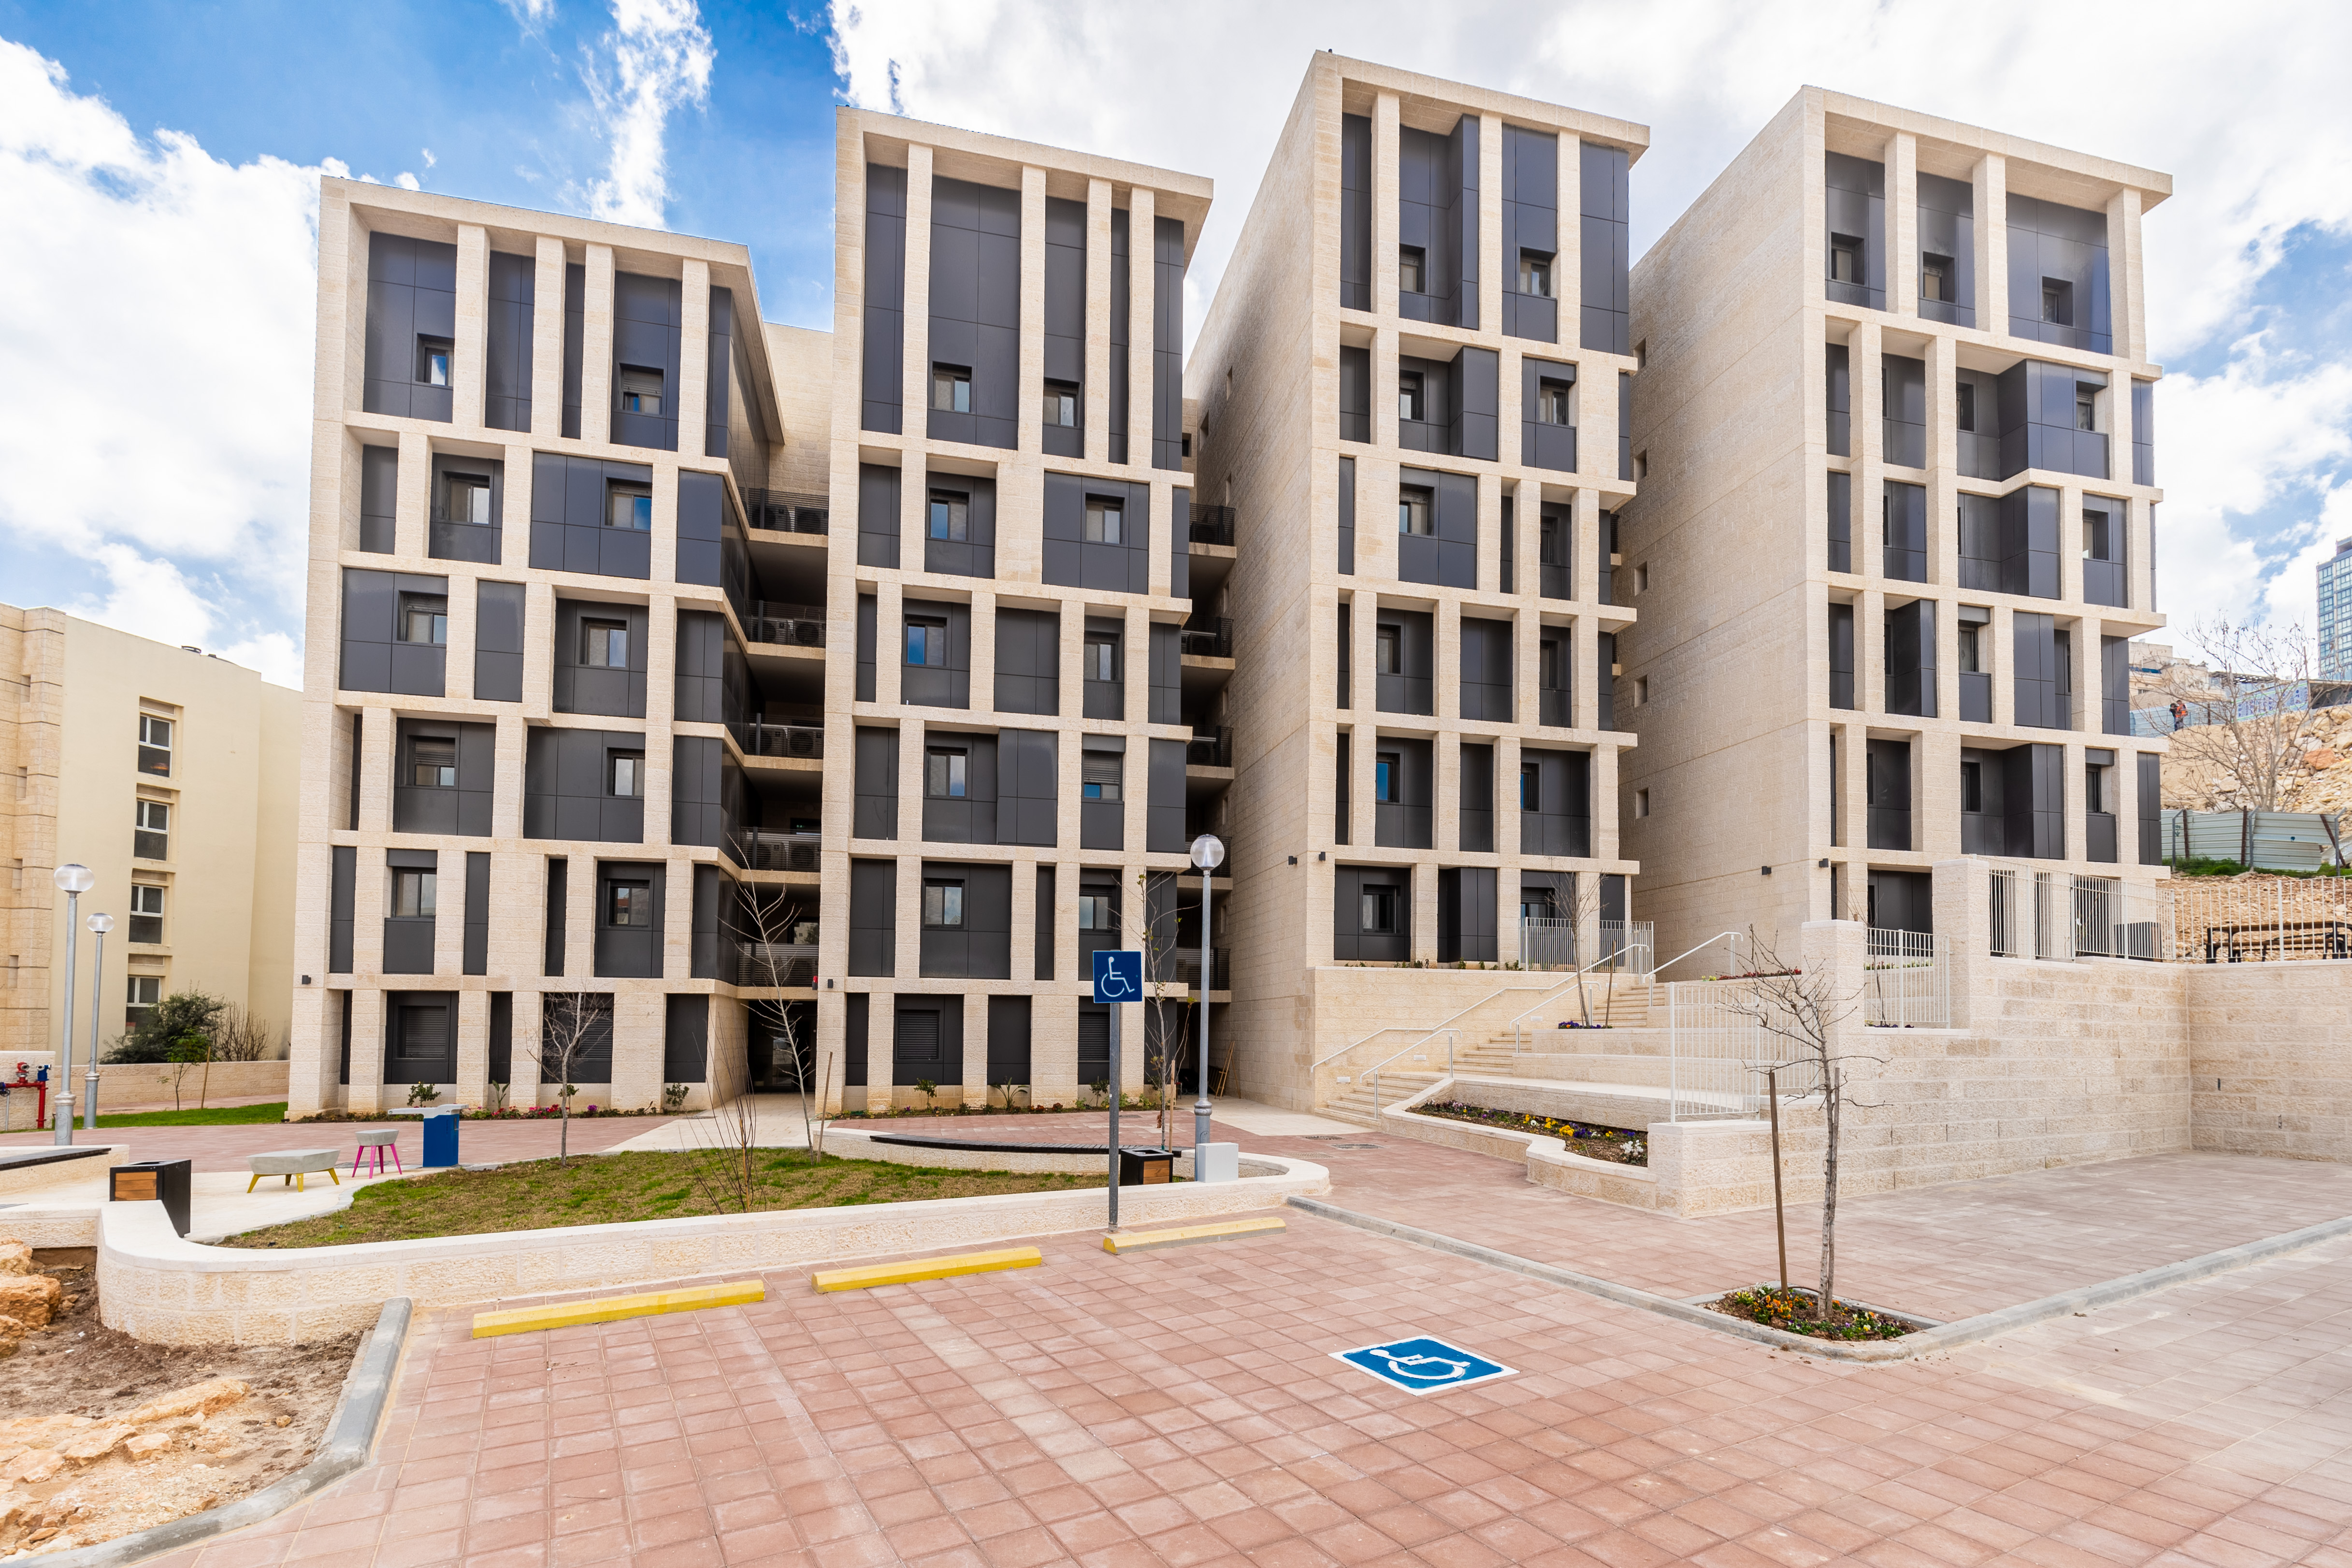 אירוע האדריכלות הירושלמי – בבניין המעונות החדש